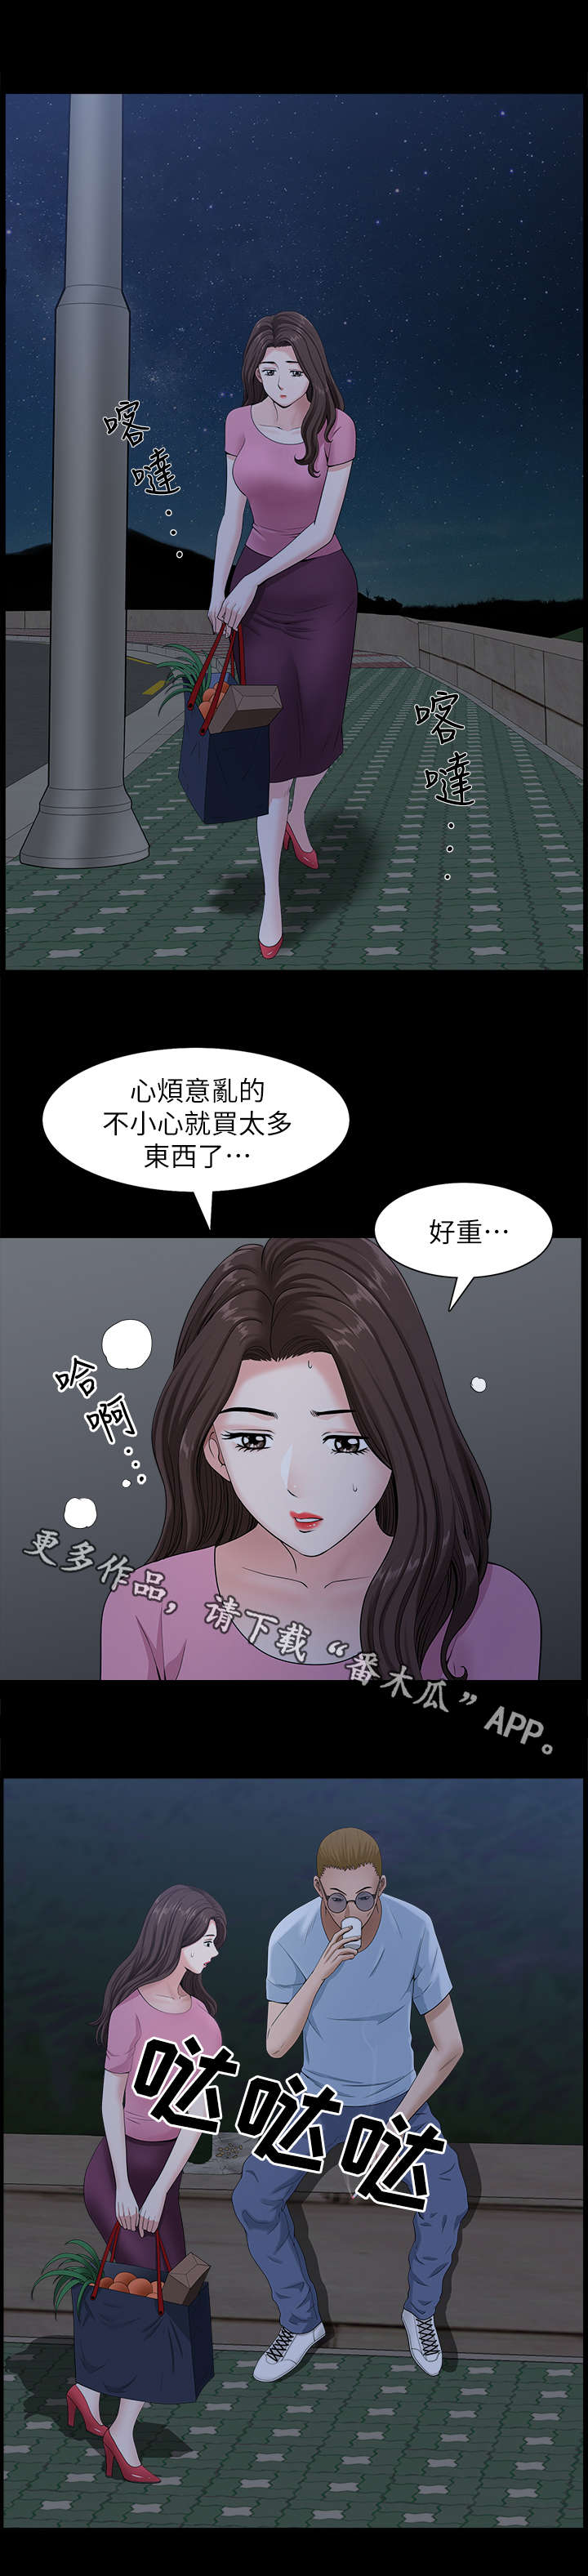 韩国漫画《相互隐瞒》完整版全文在线阅读